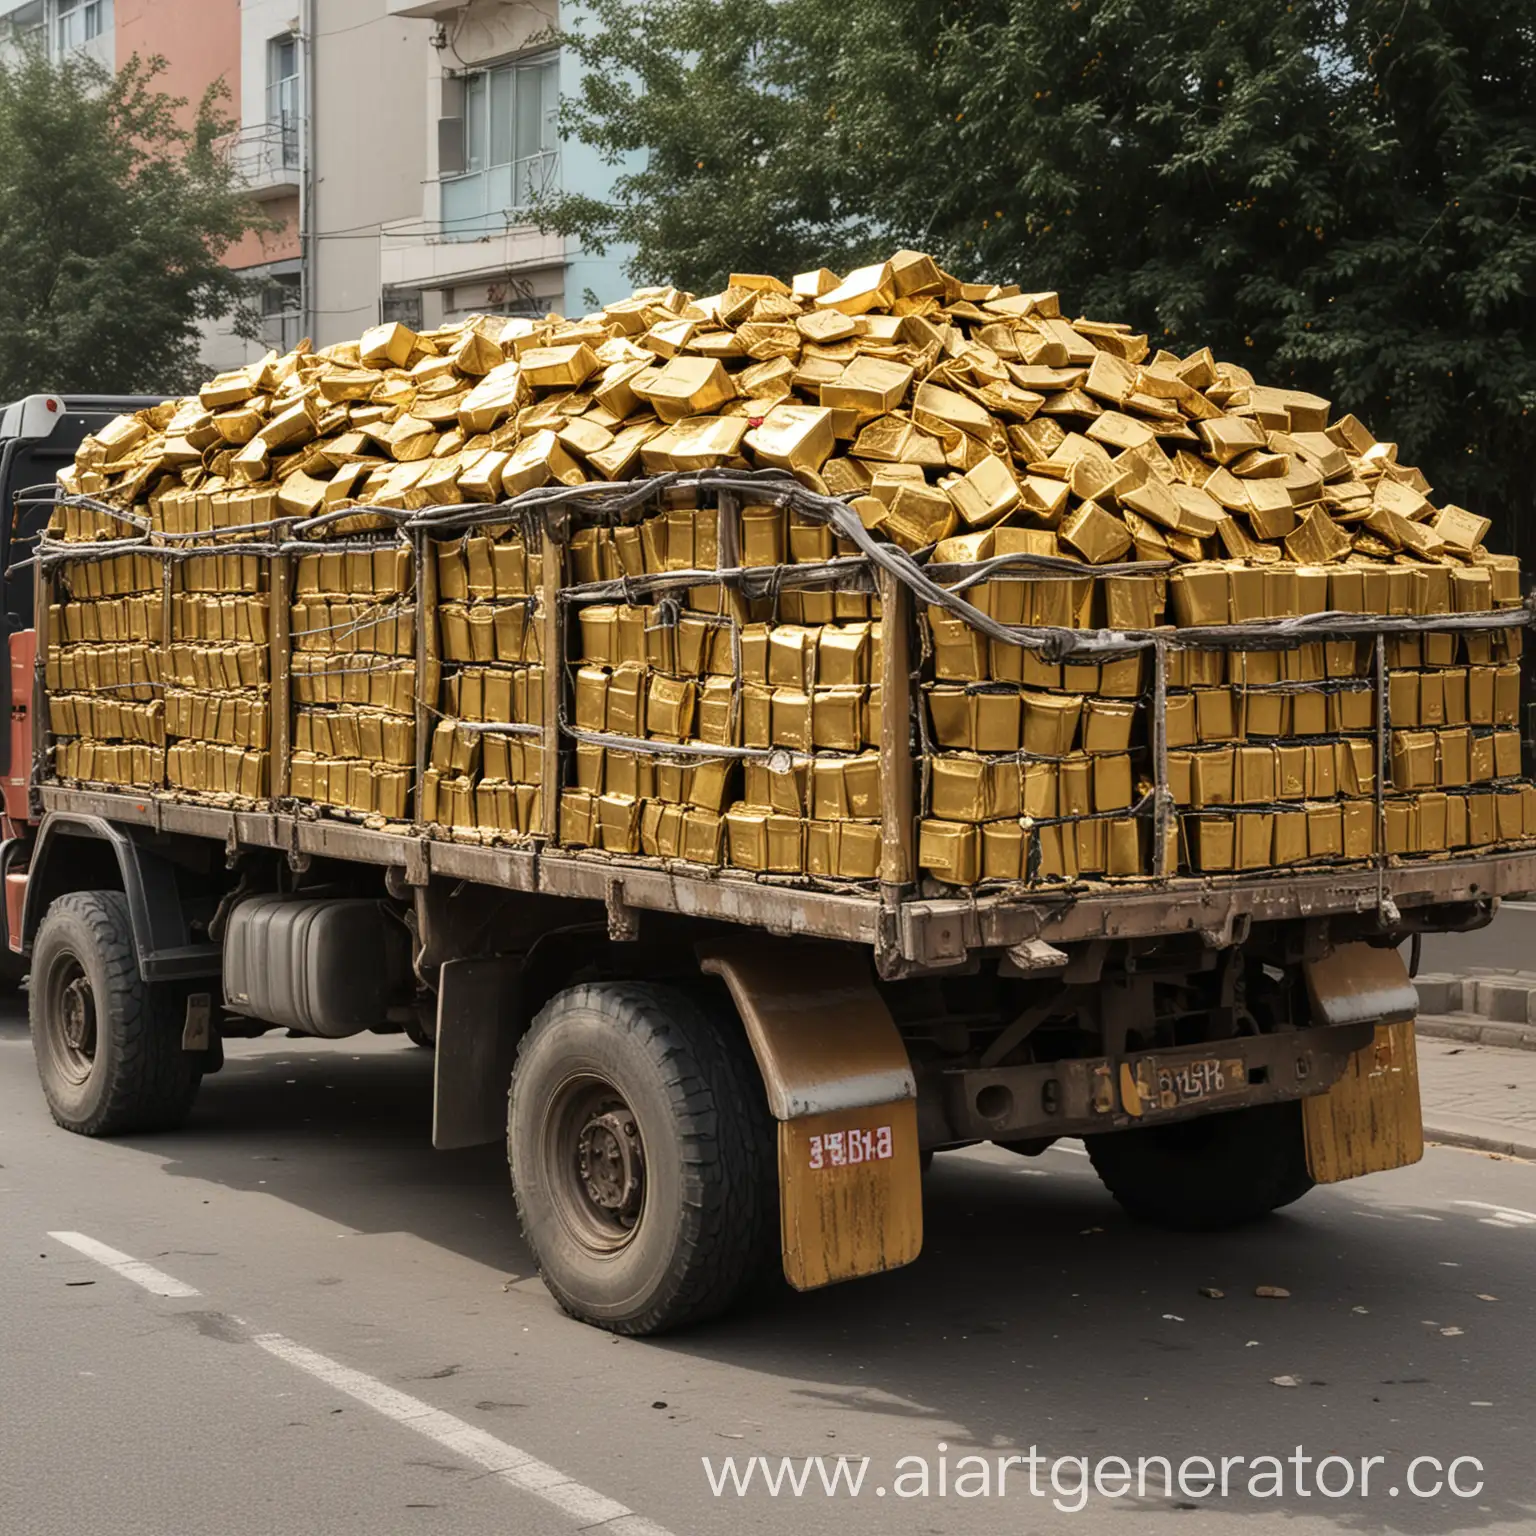 кузов грузовика, наполненный слитками золота